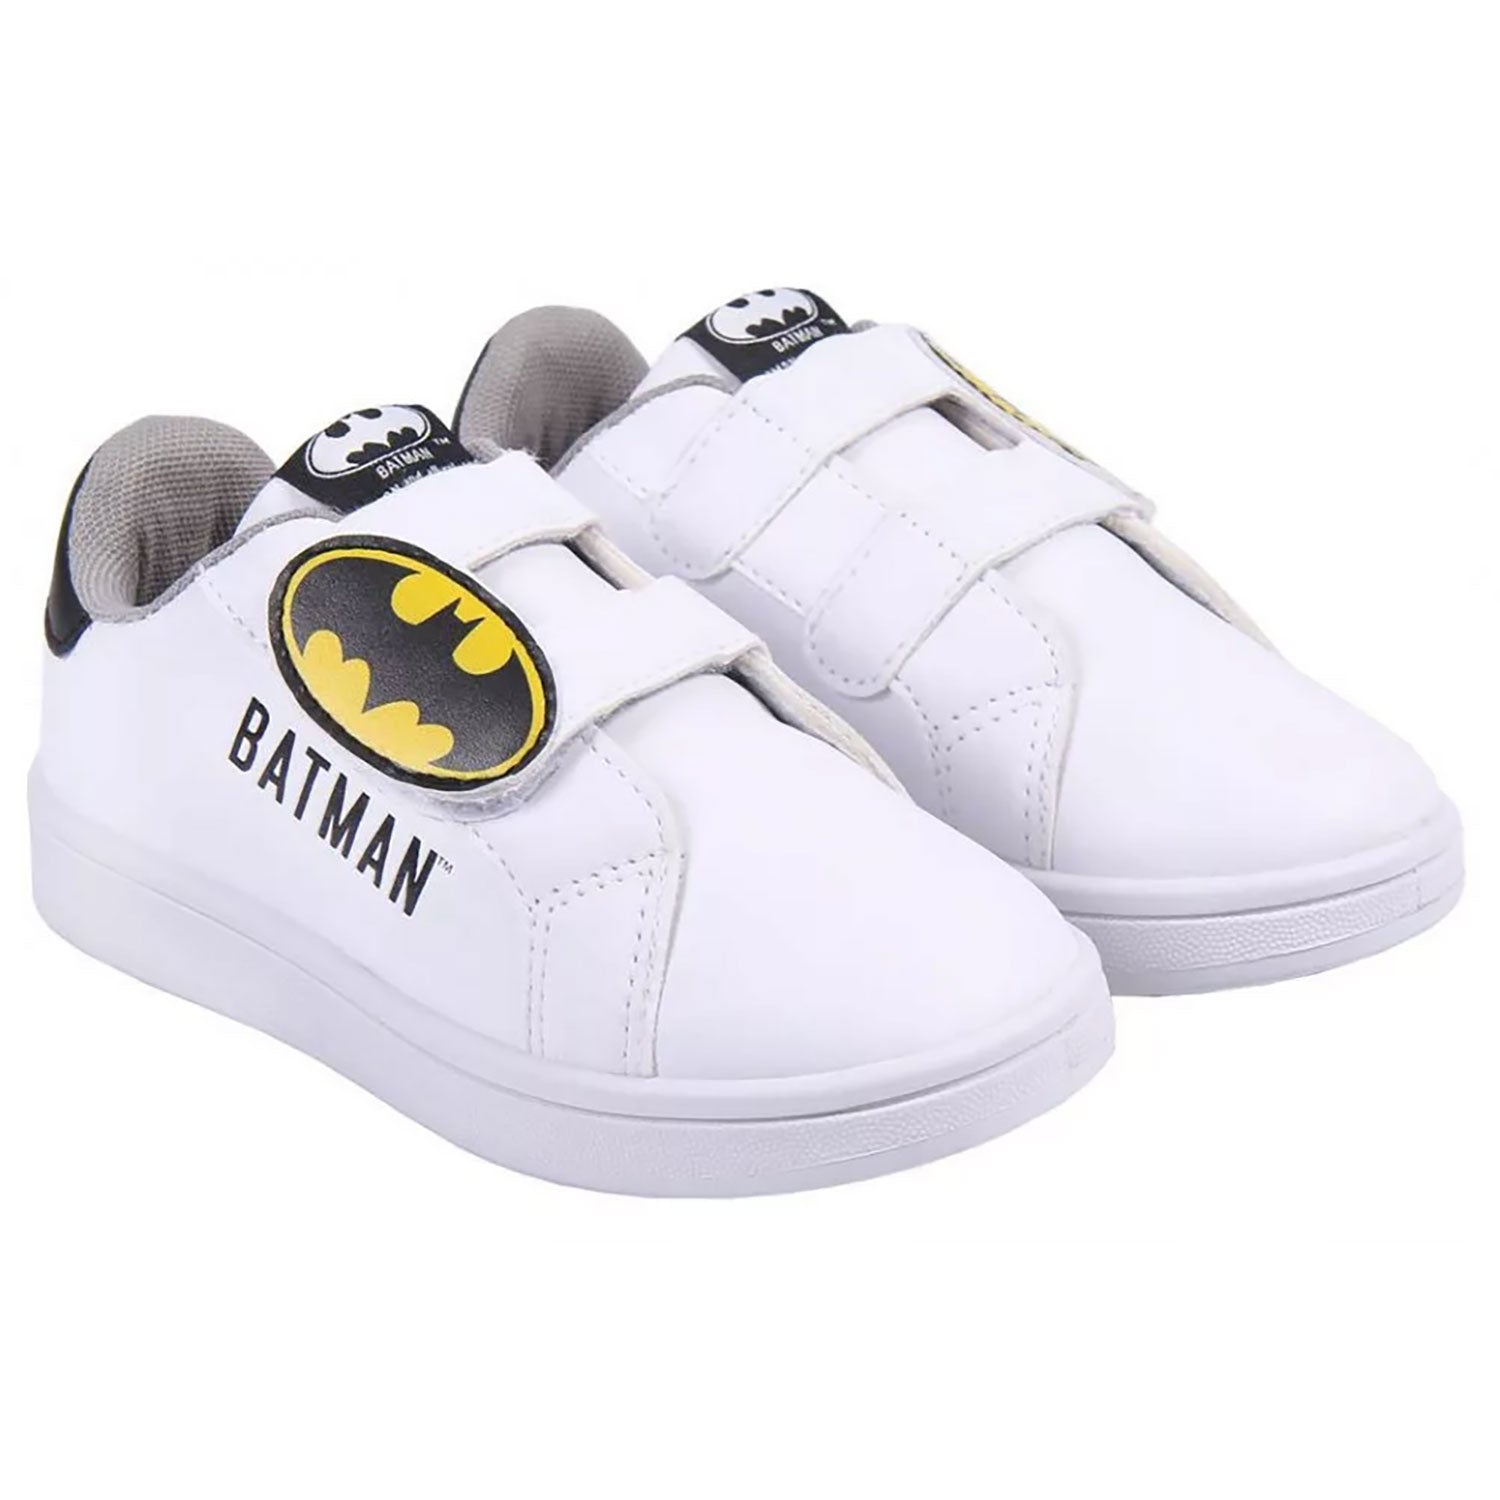 Scarpe Batman DC Comics sneakers sportive a strappo bambino 4988